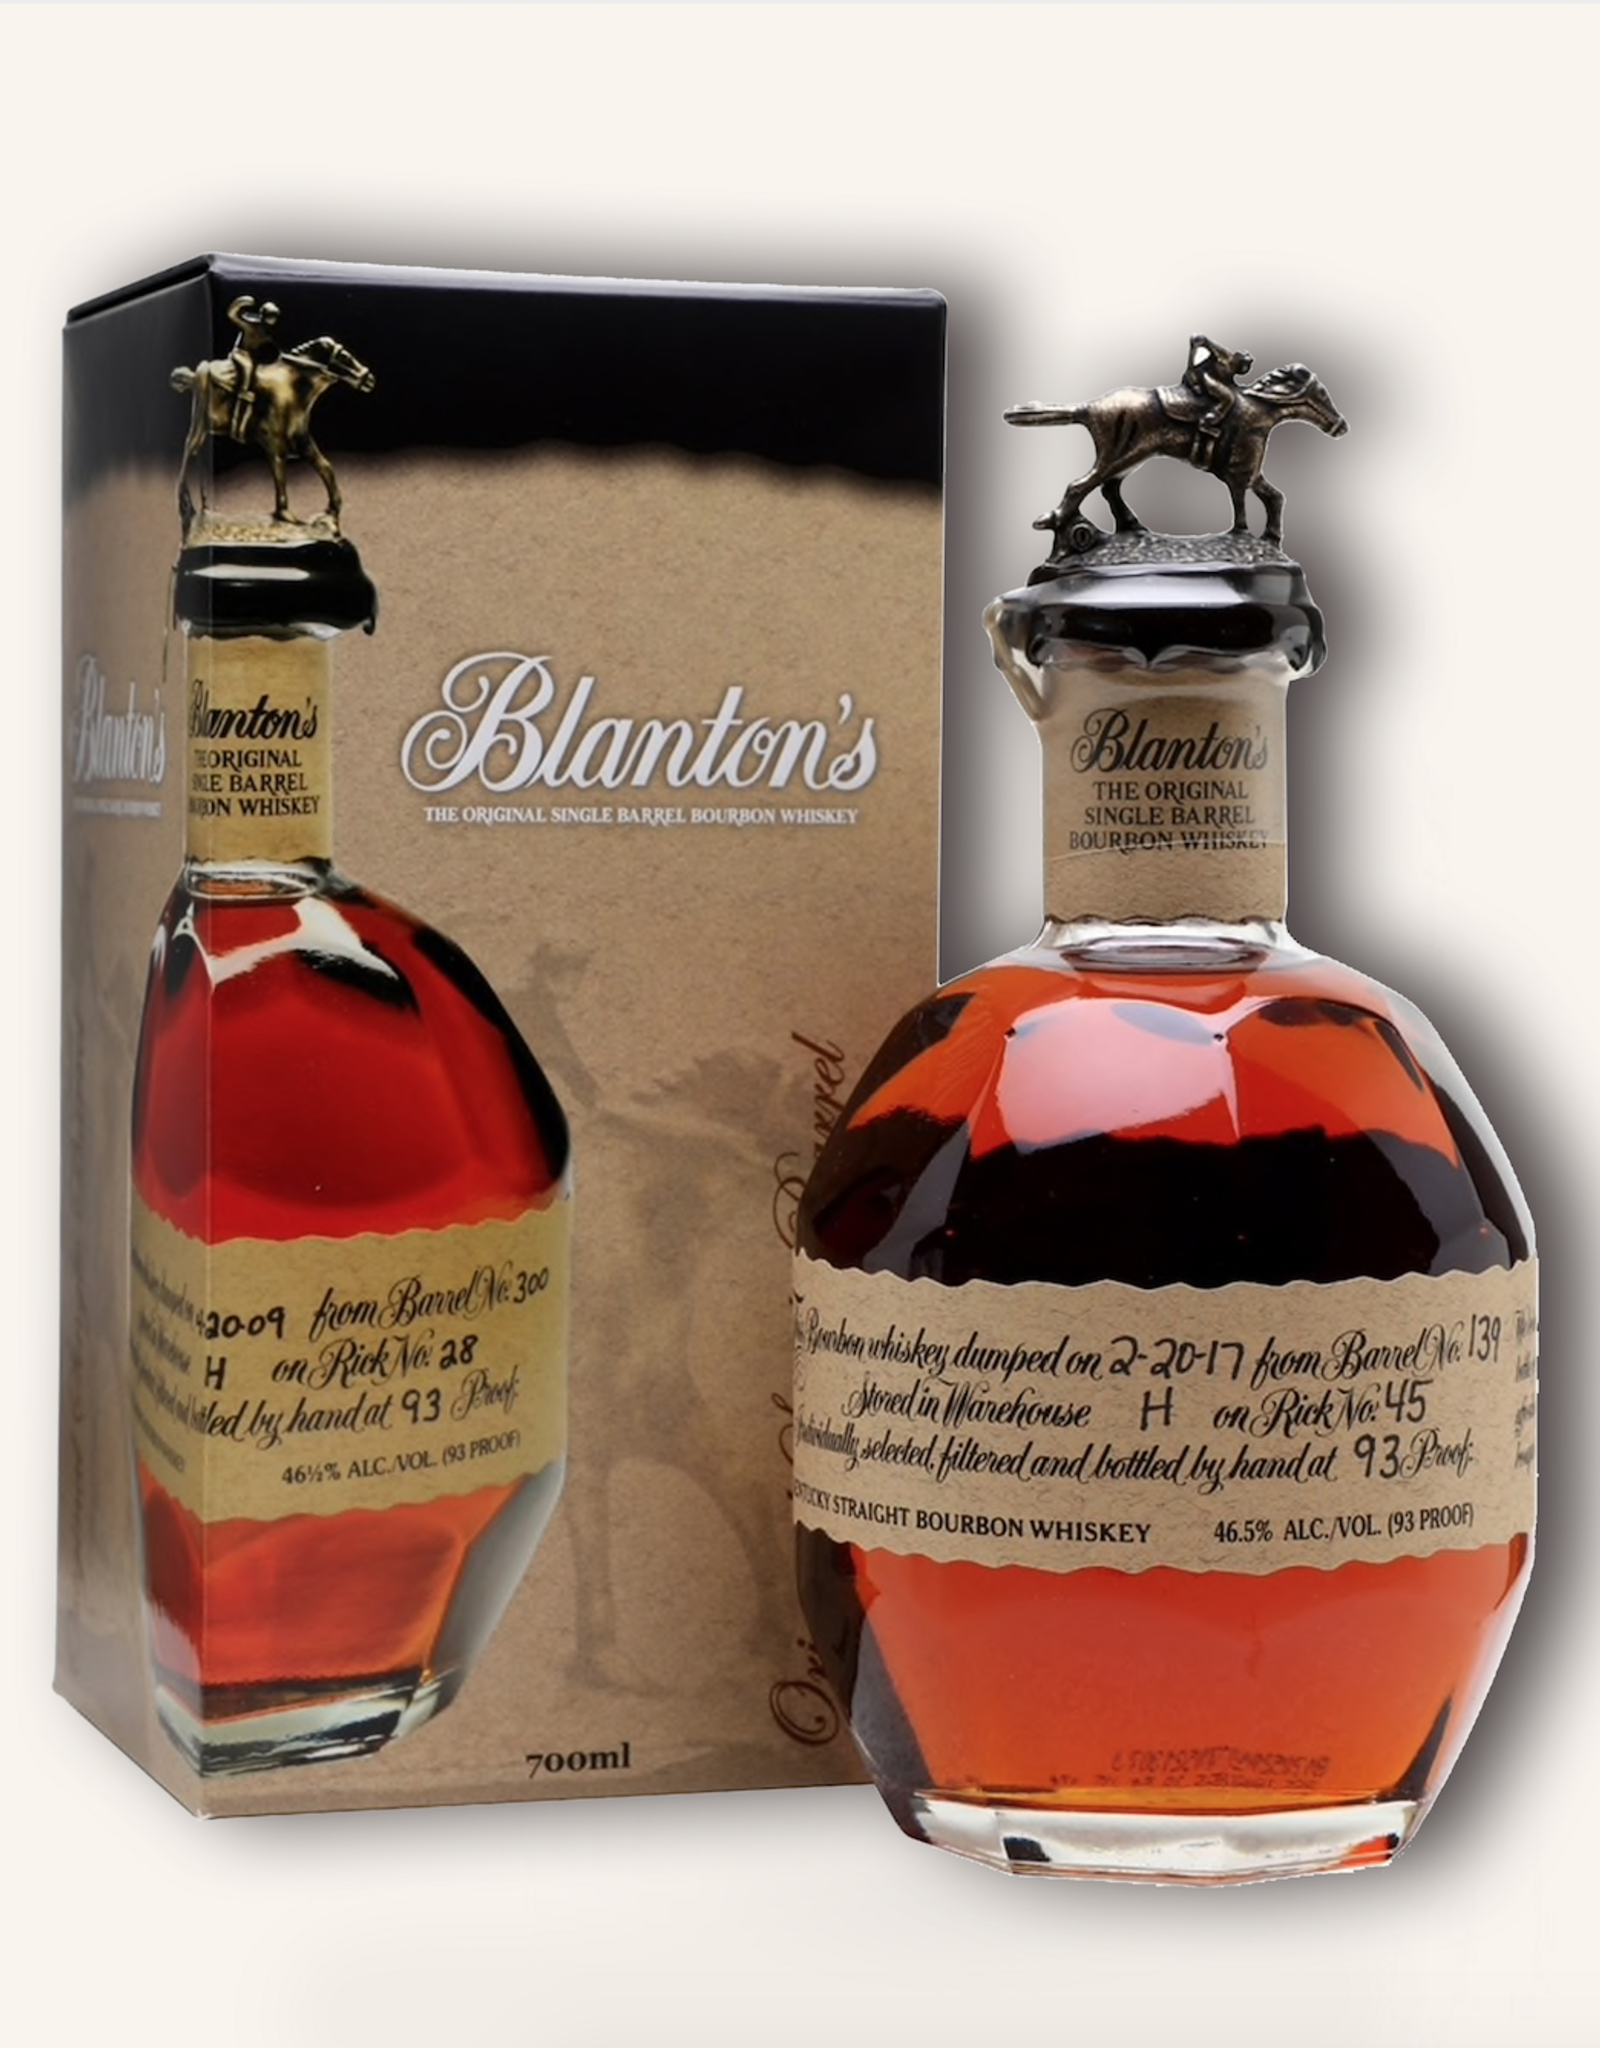 Blanton's Blanton's bourbon 750 ml